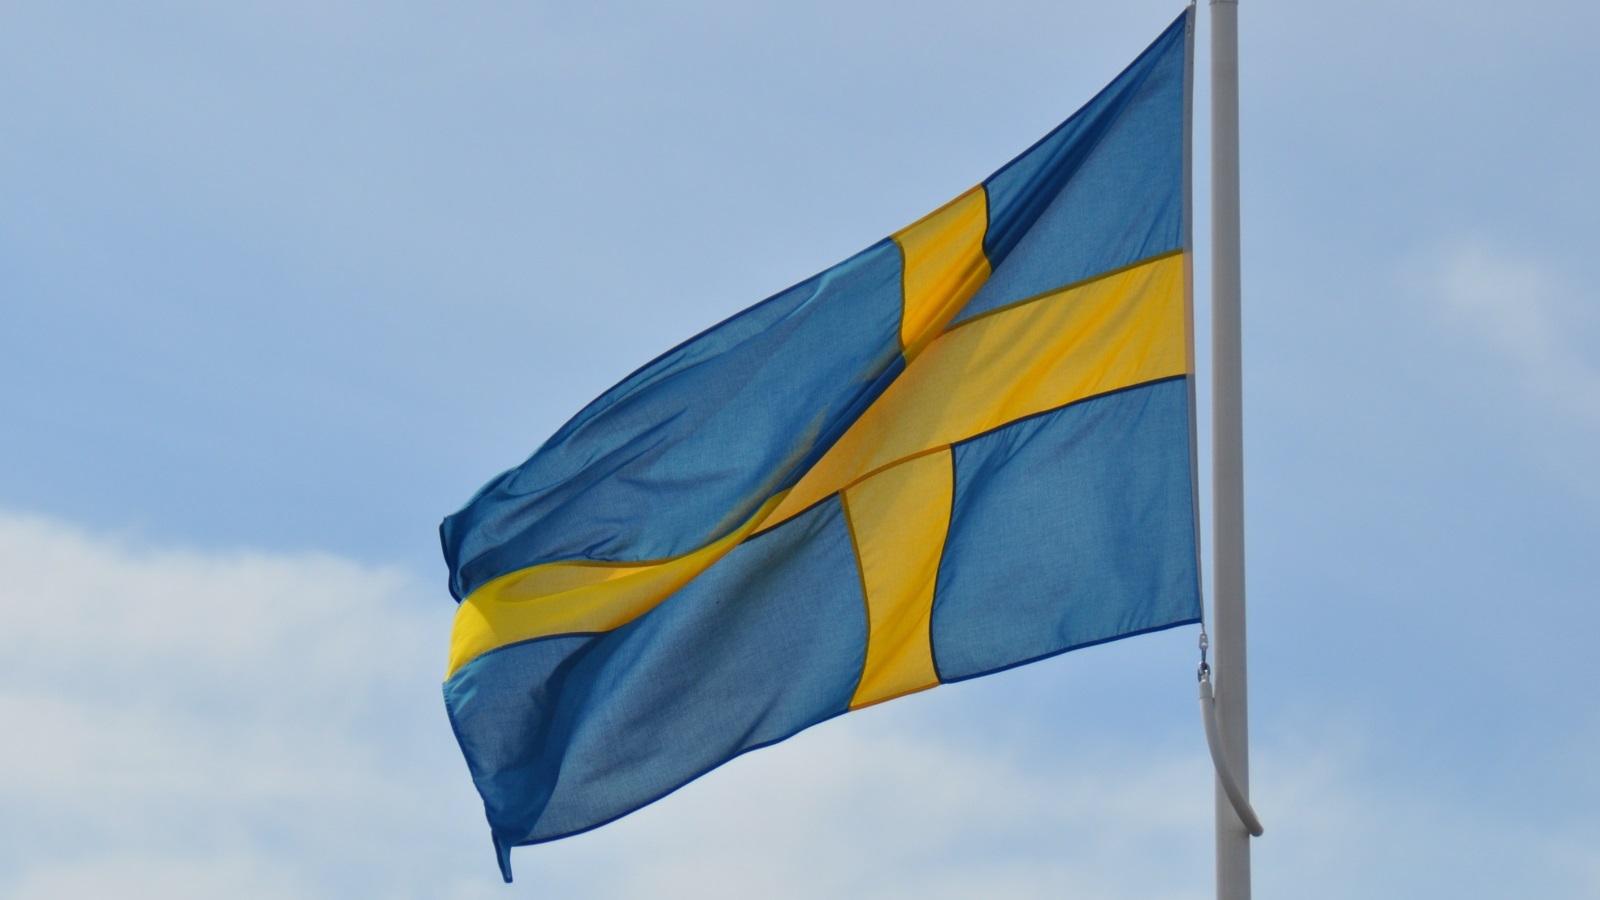 تحديثات هامة لاخبار الهجرة في السويد لعام 2023: فرص وتغييرات جديدة تنتظر الطلاب الدوليين